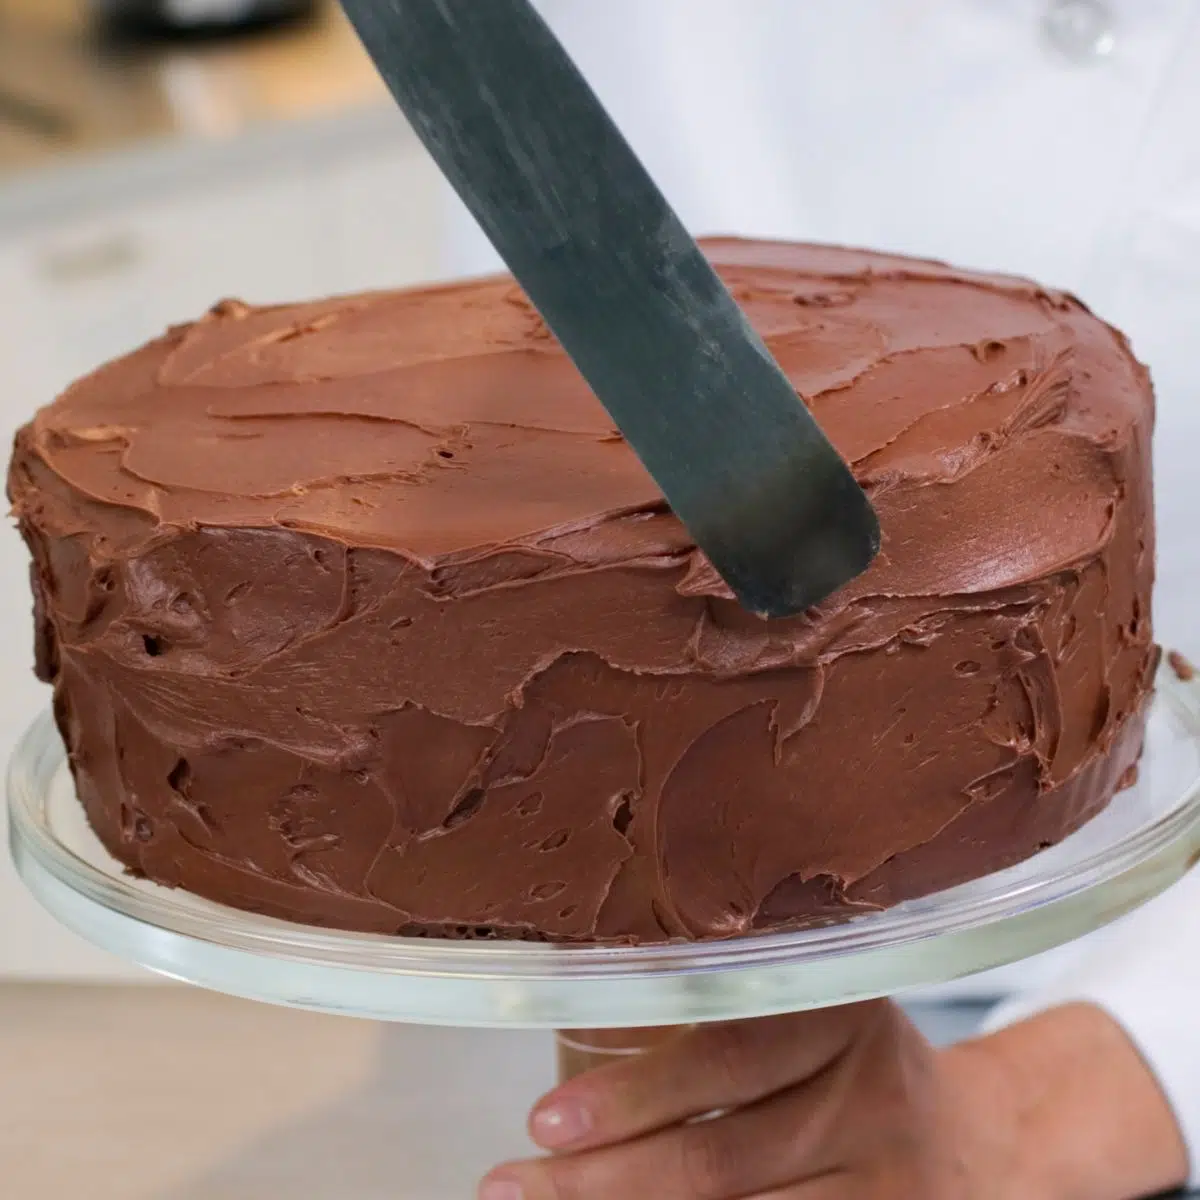 Imagen cuadrada que muestra el glaseado de un pastel.